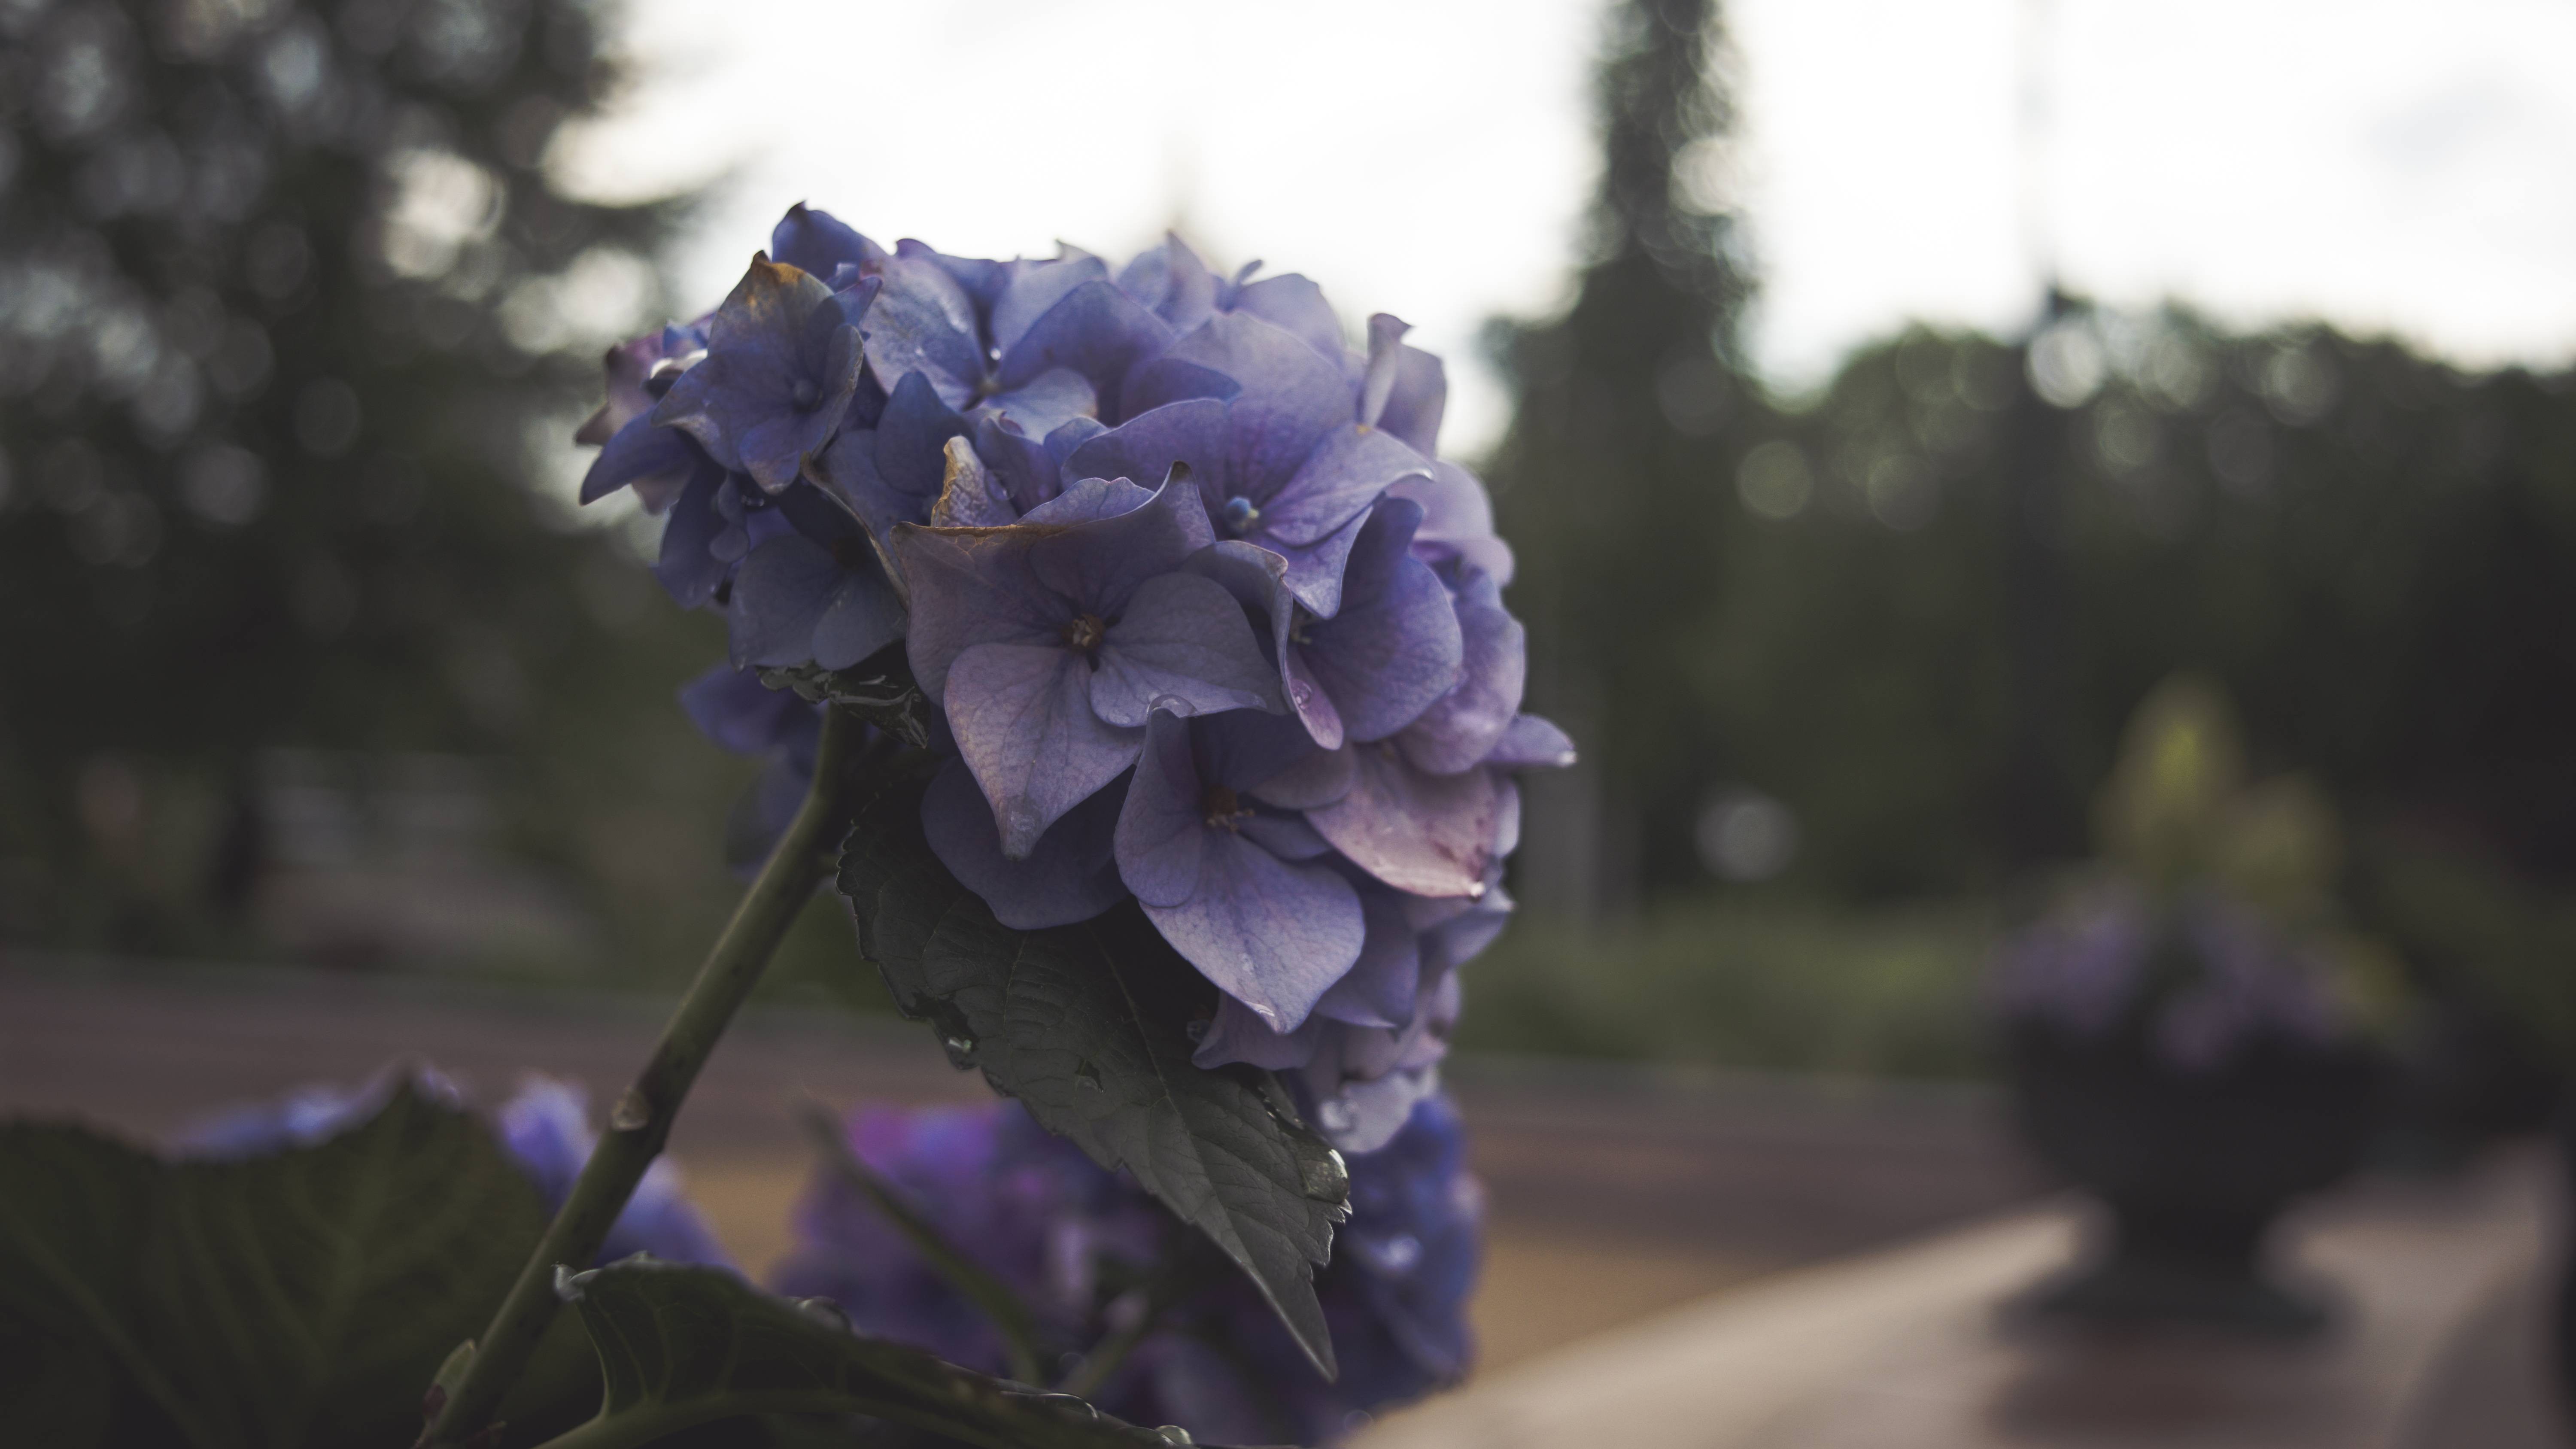 General 6000x3375 flowers depth of field blue purple plants park garden outdoors hydrangea closeup macro